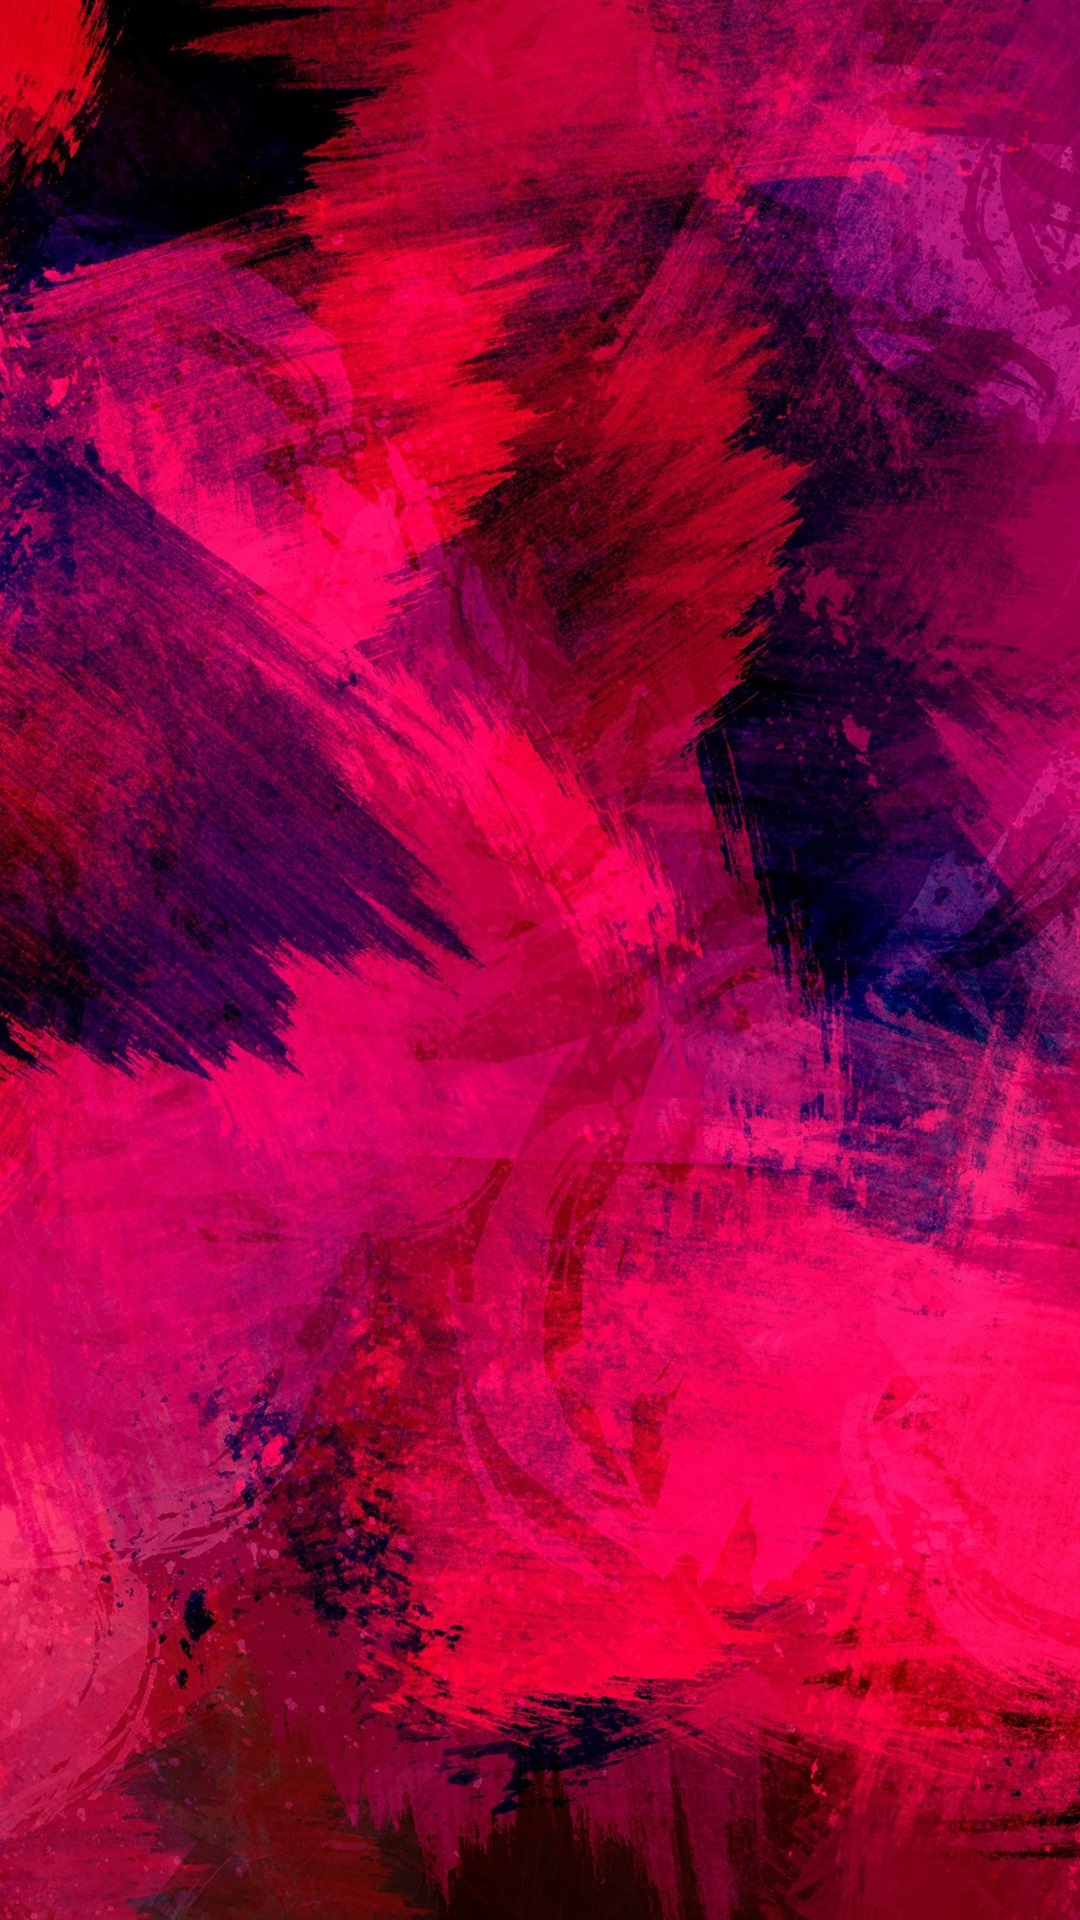 fondos de pantalla artísticos para android,rojo,rosado,púrpura,violeta,cielo